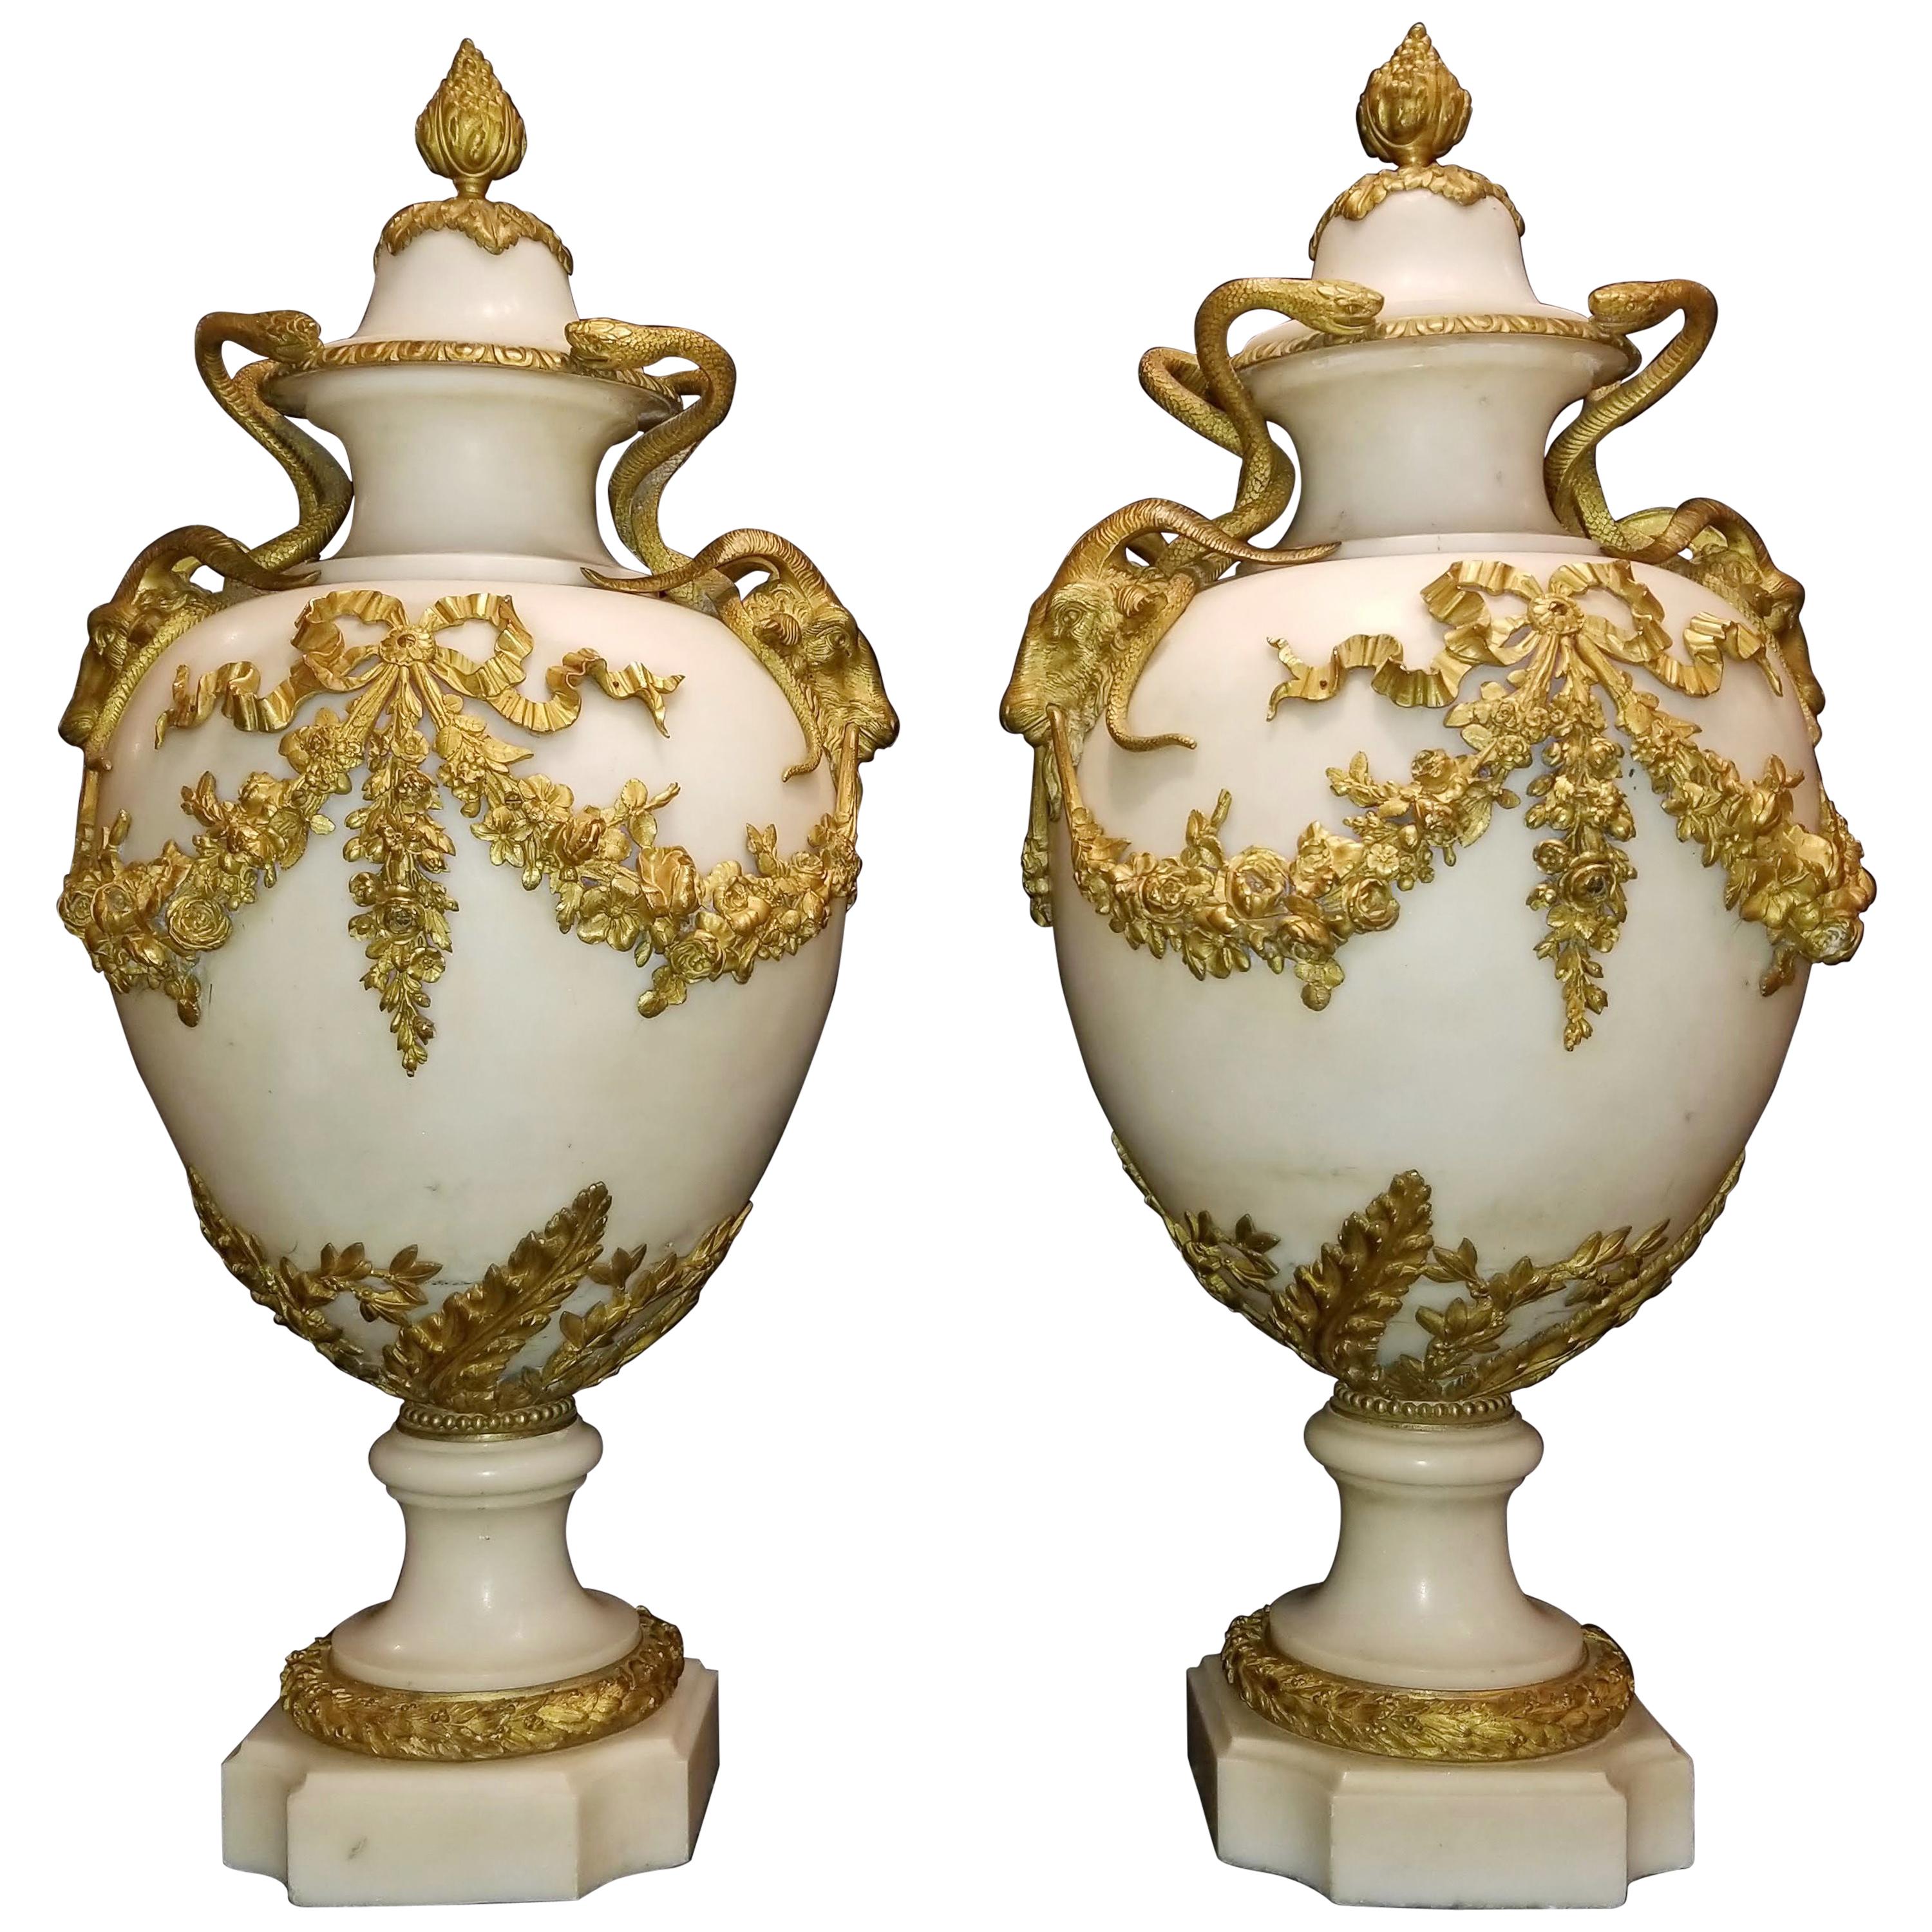 Paire de vases couverts en bronze doré et marbre blanc de Carrare de style Louis XVI